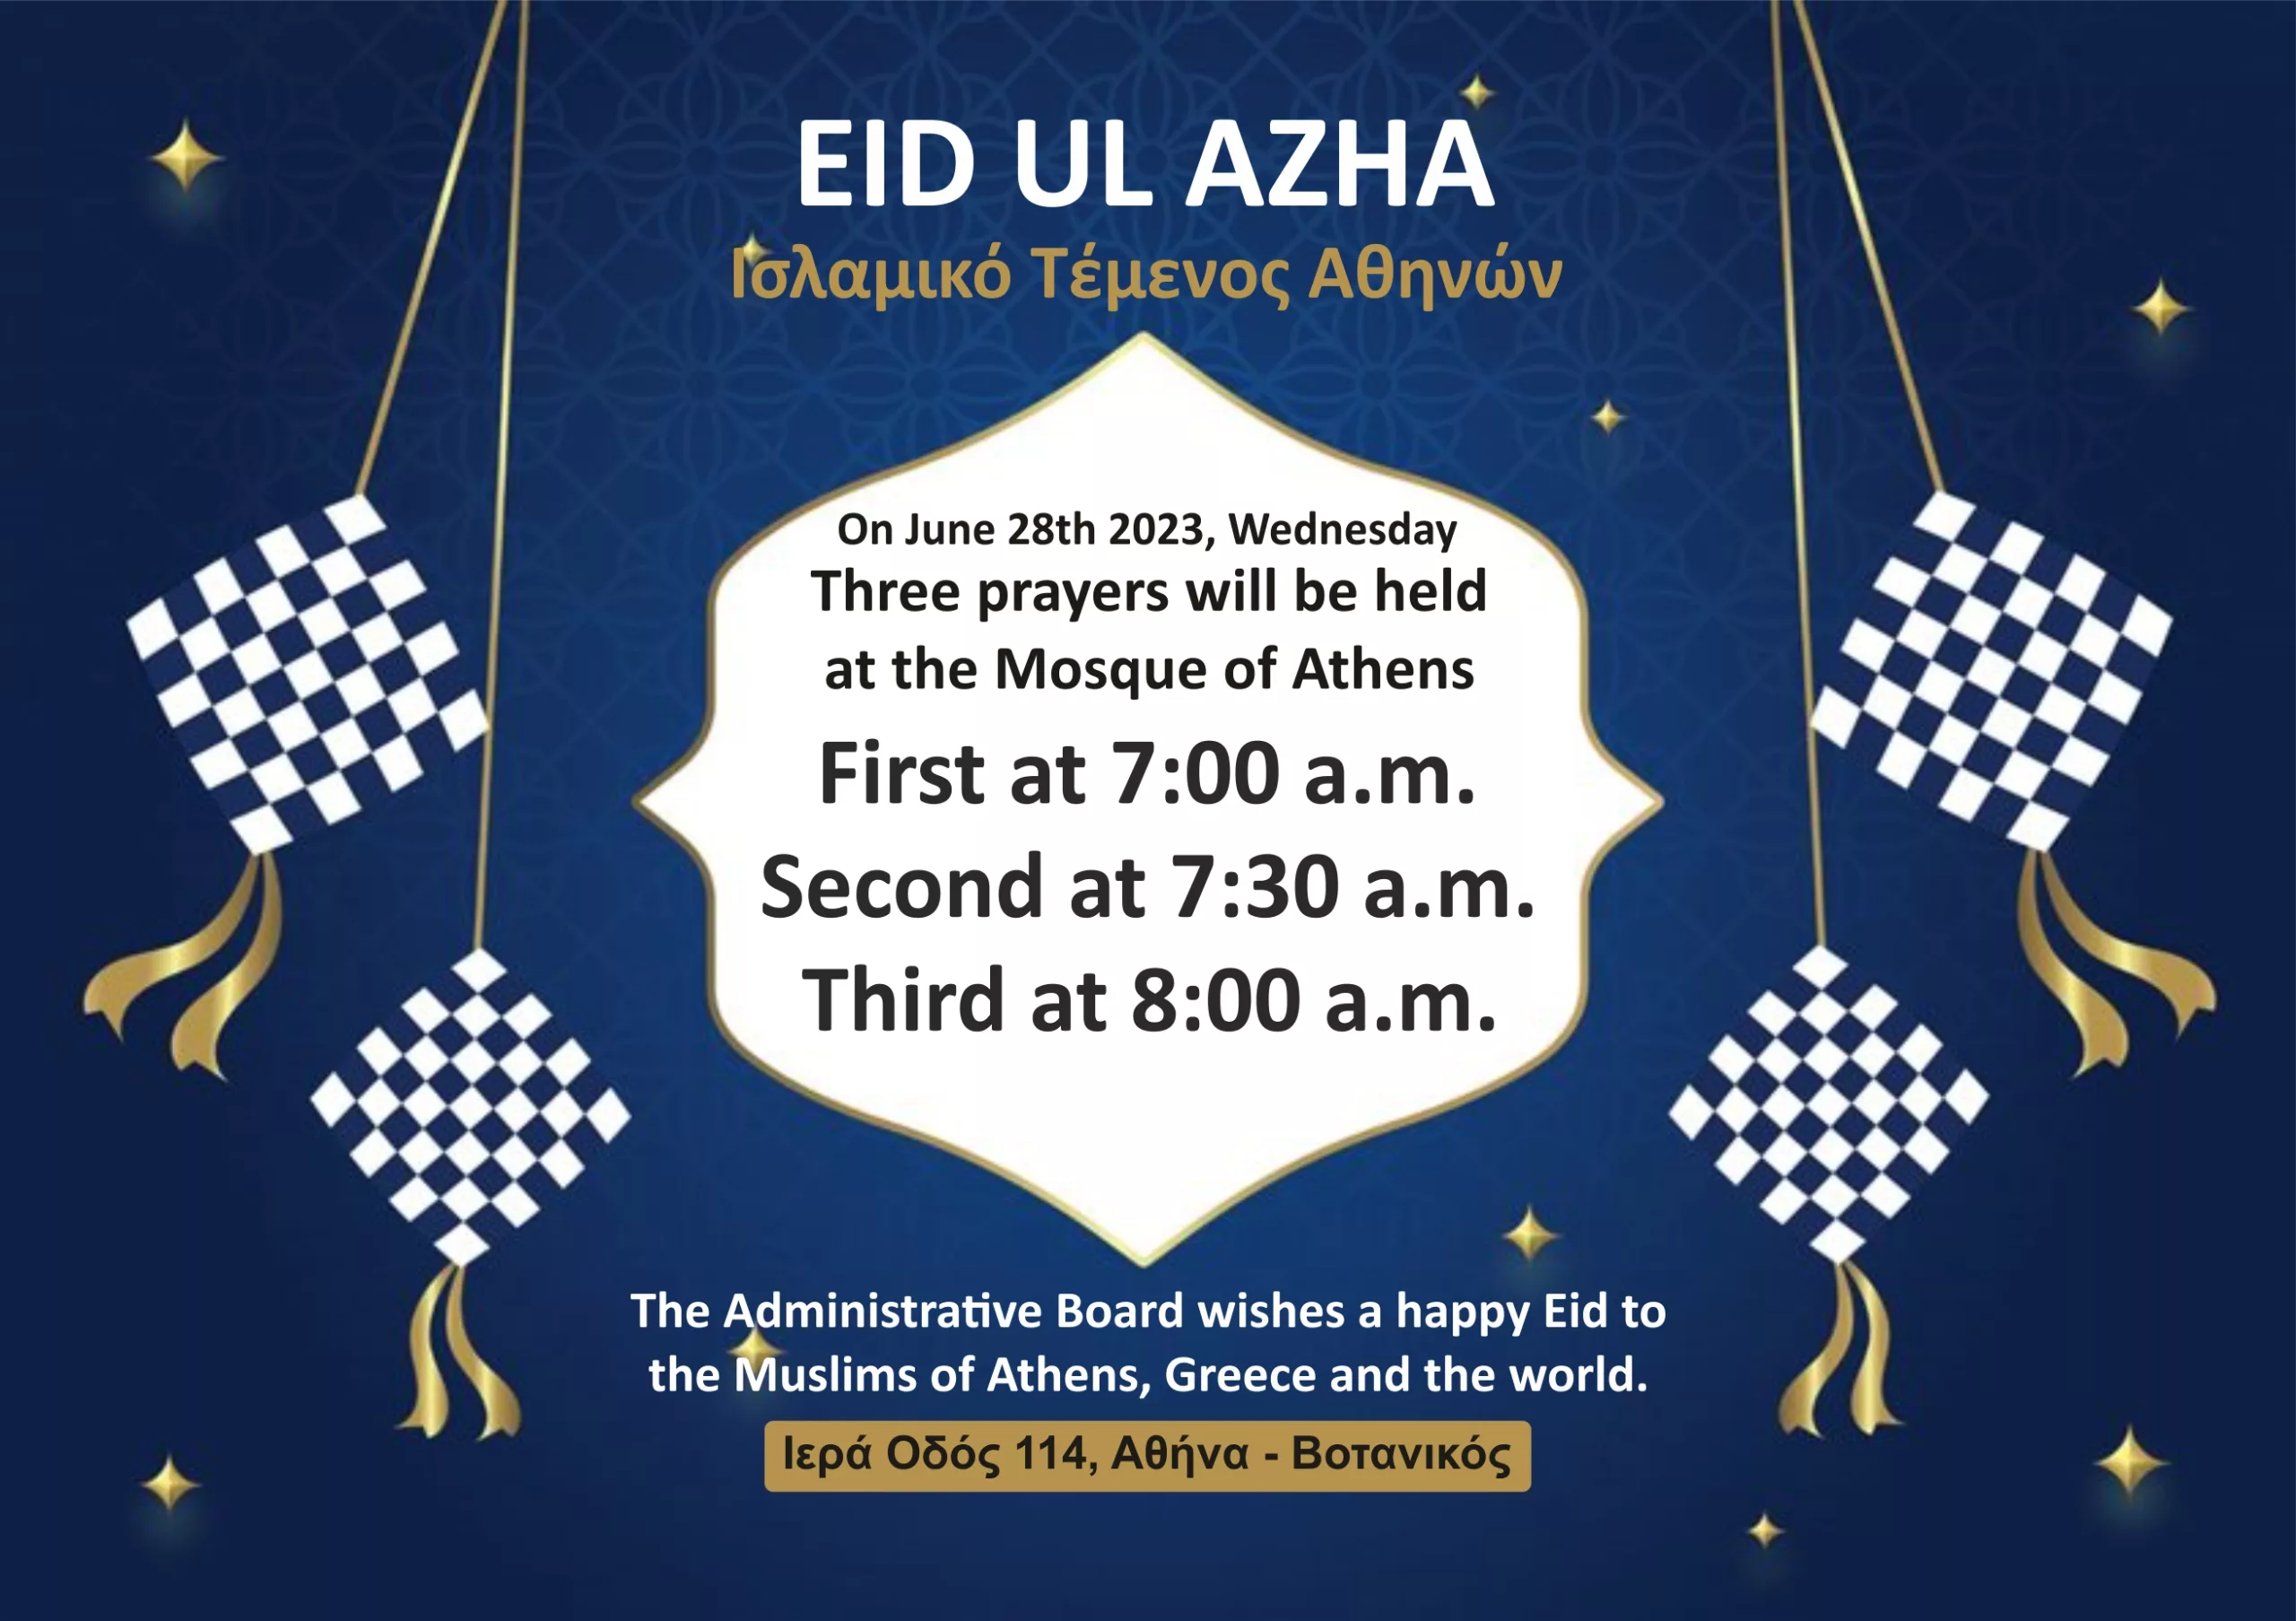 Eid Ul Azha 2023 - Mosque of Athens ENG